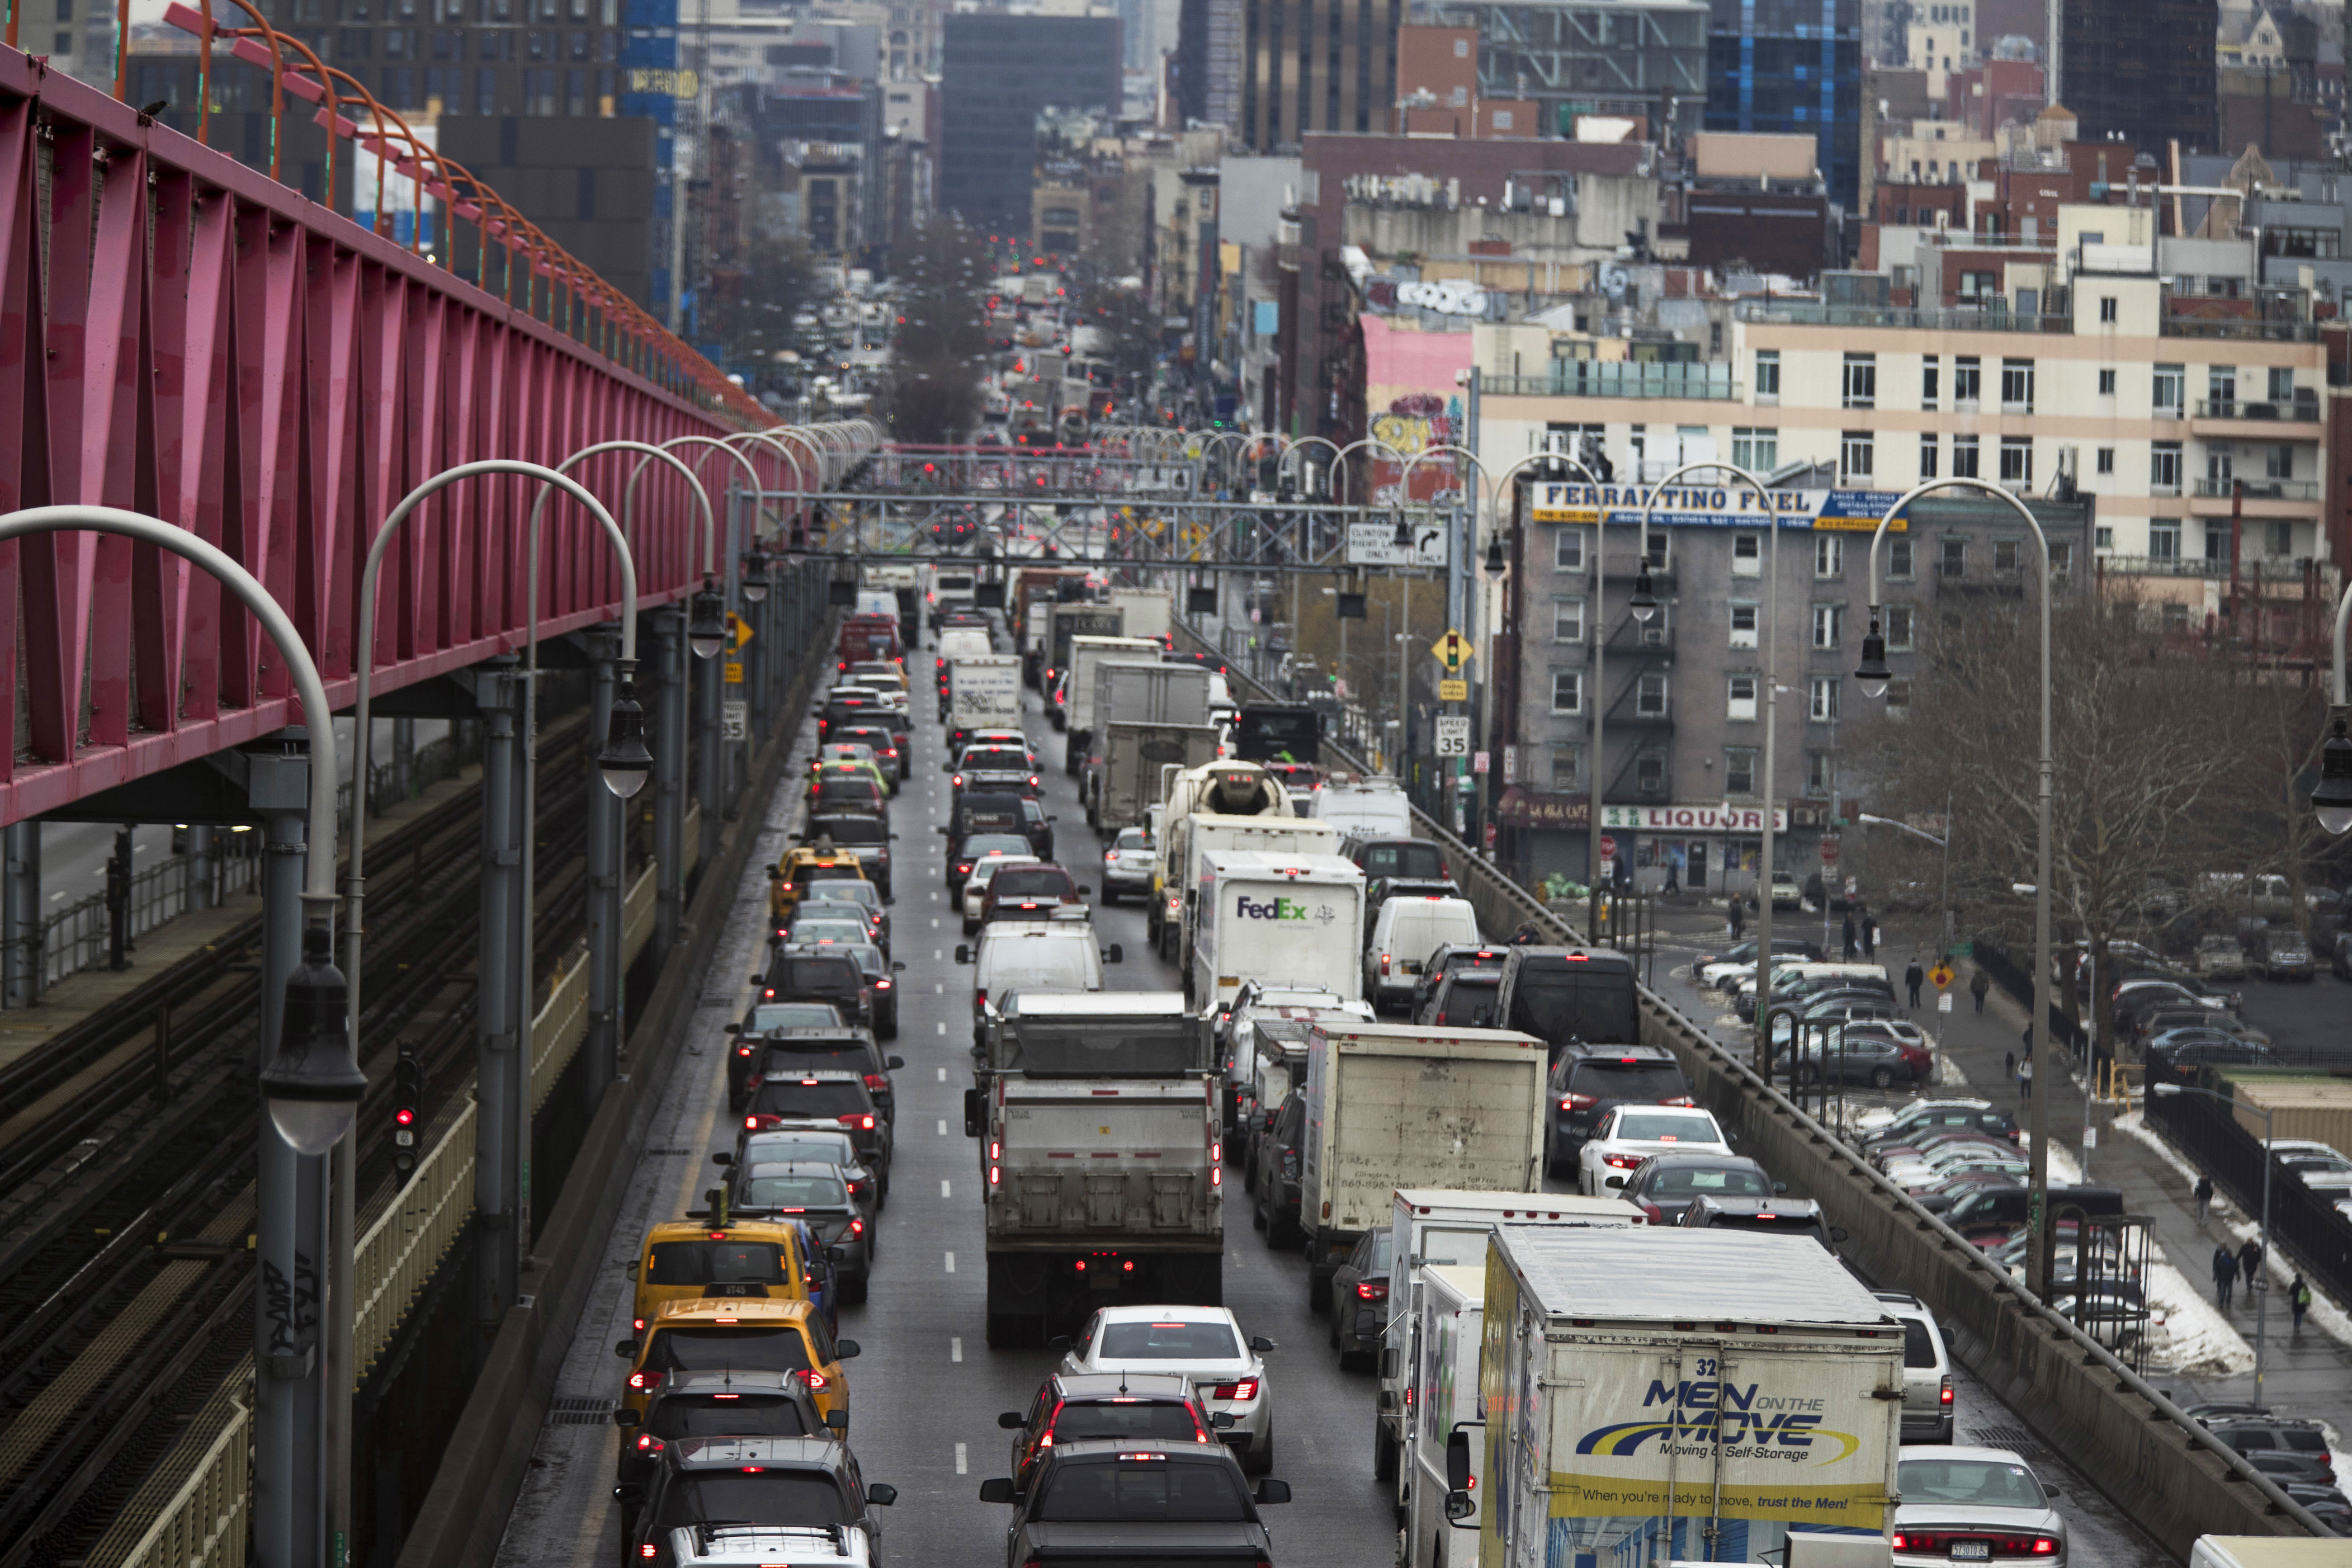 tarifa de congestión se aplicará desde el 30 de junio: mta cobrará peaje para circular en midtown nueva york